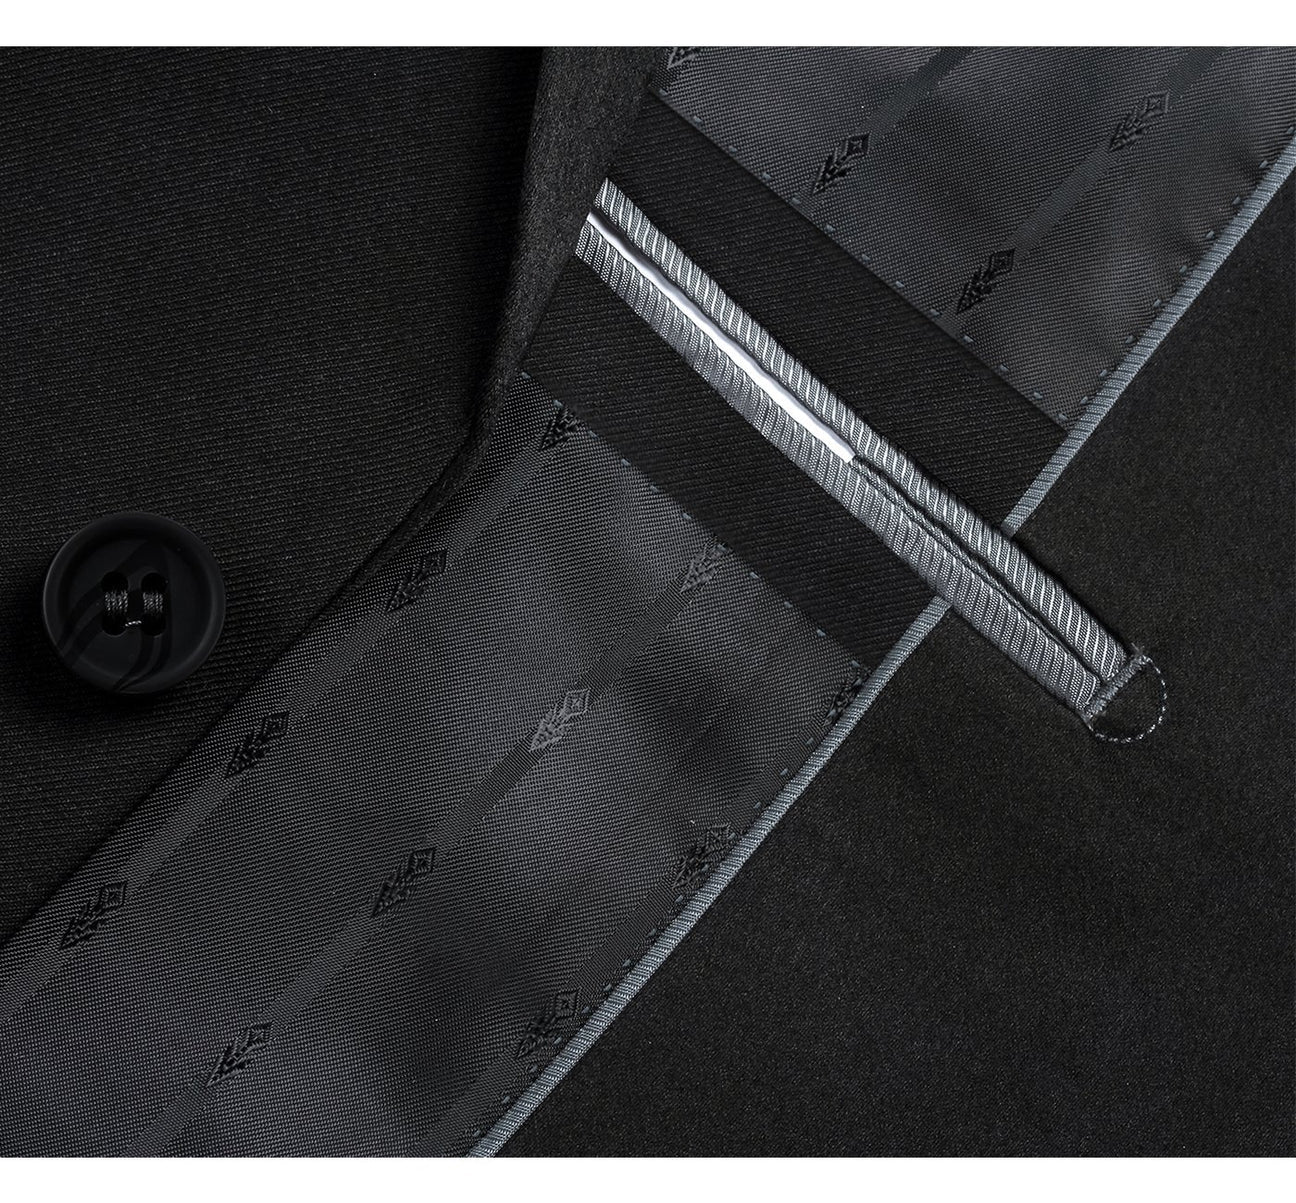 Renoir Classic Fit Black 2 Button Notch Lapel Suit